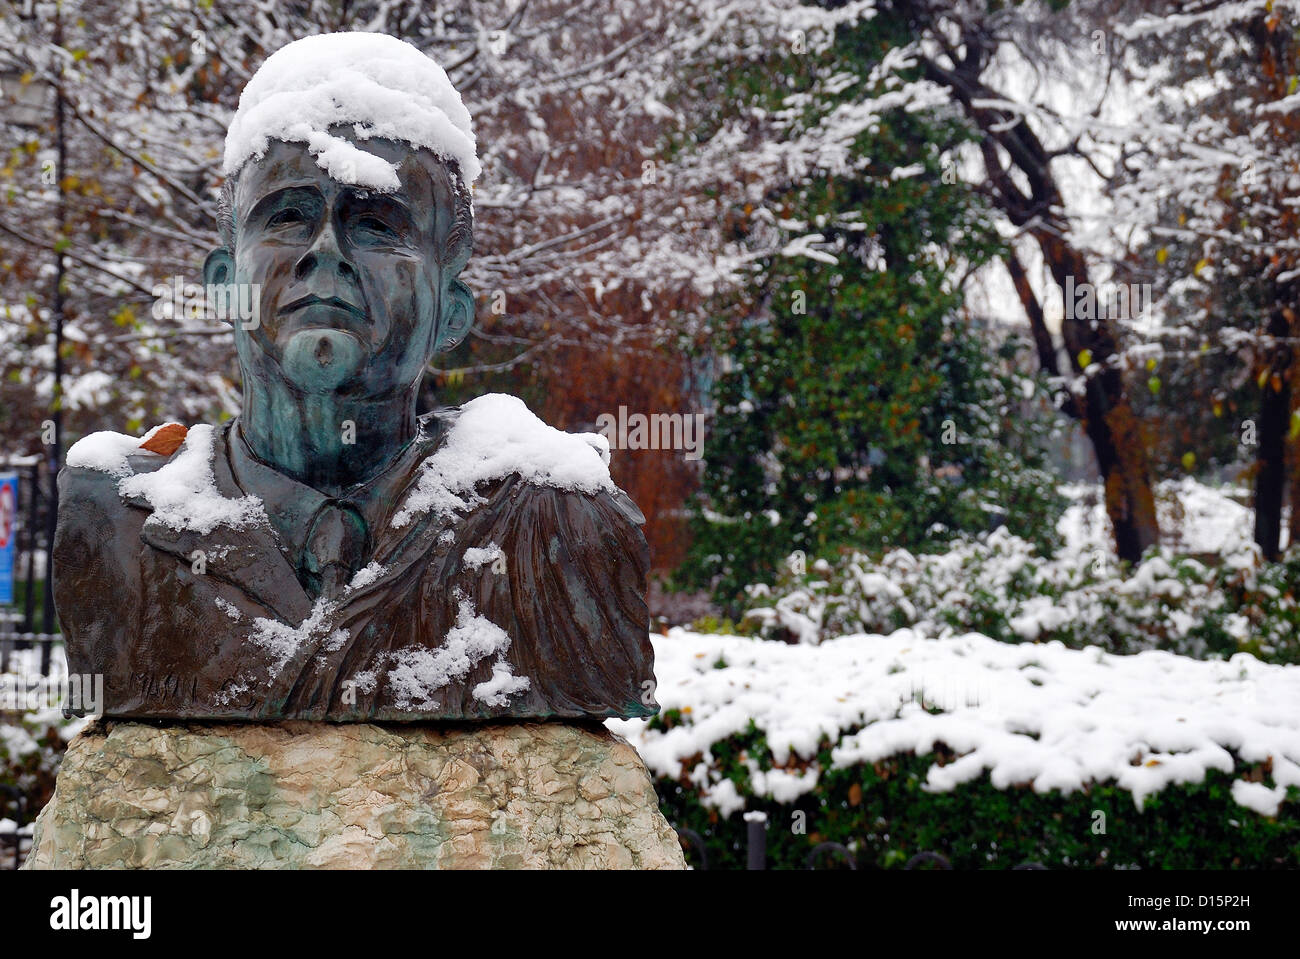 Padova, Italia, dicembre 8th, 2012. Oggi la prima neve dell anno ha imbiancato la città. Statua di G. Perlasca nel parco pubblico. Foto Stock